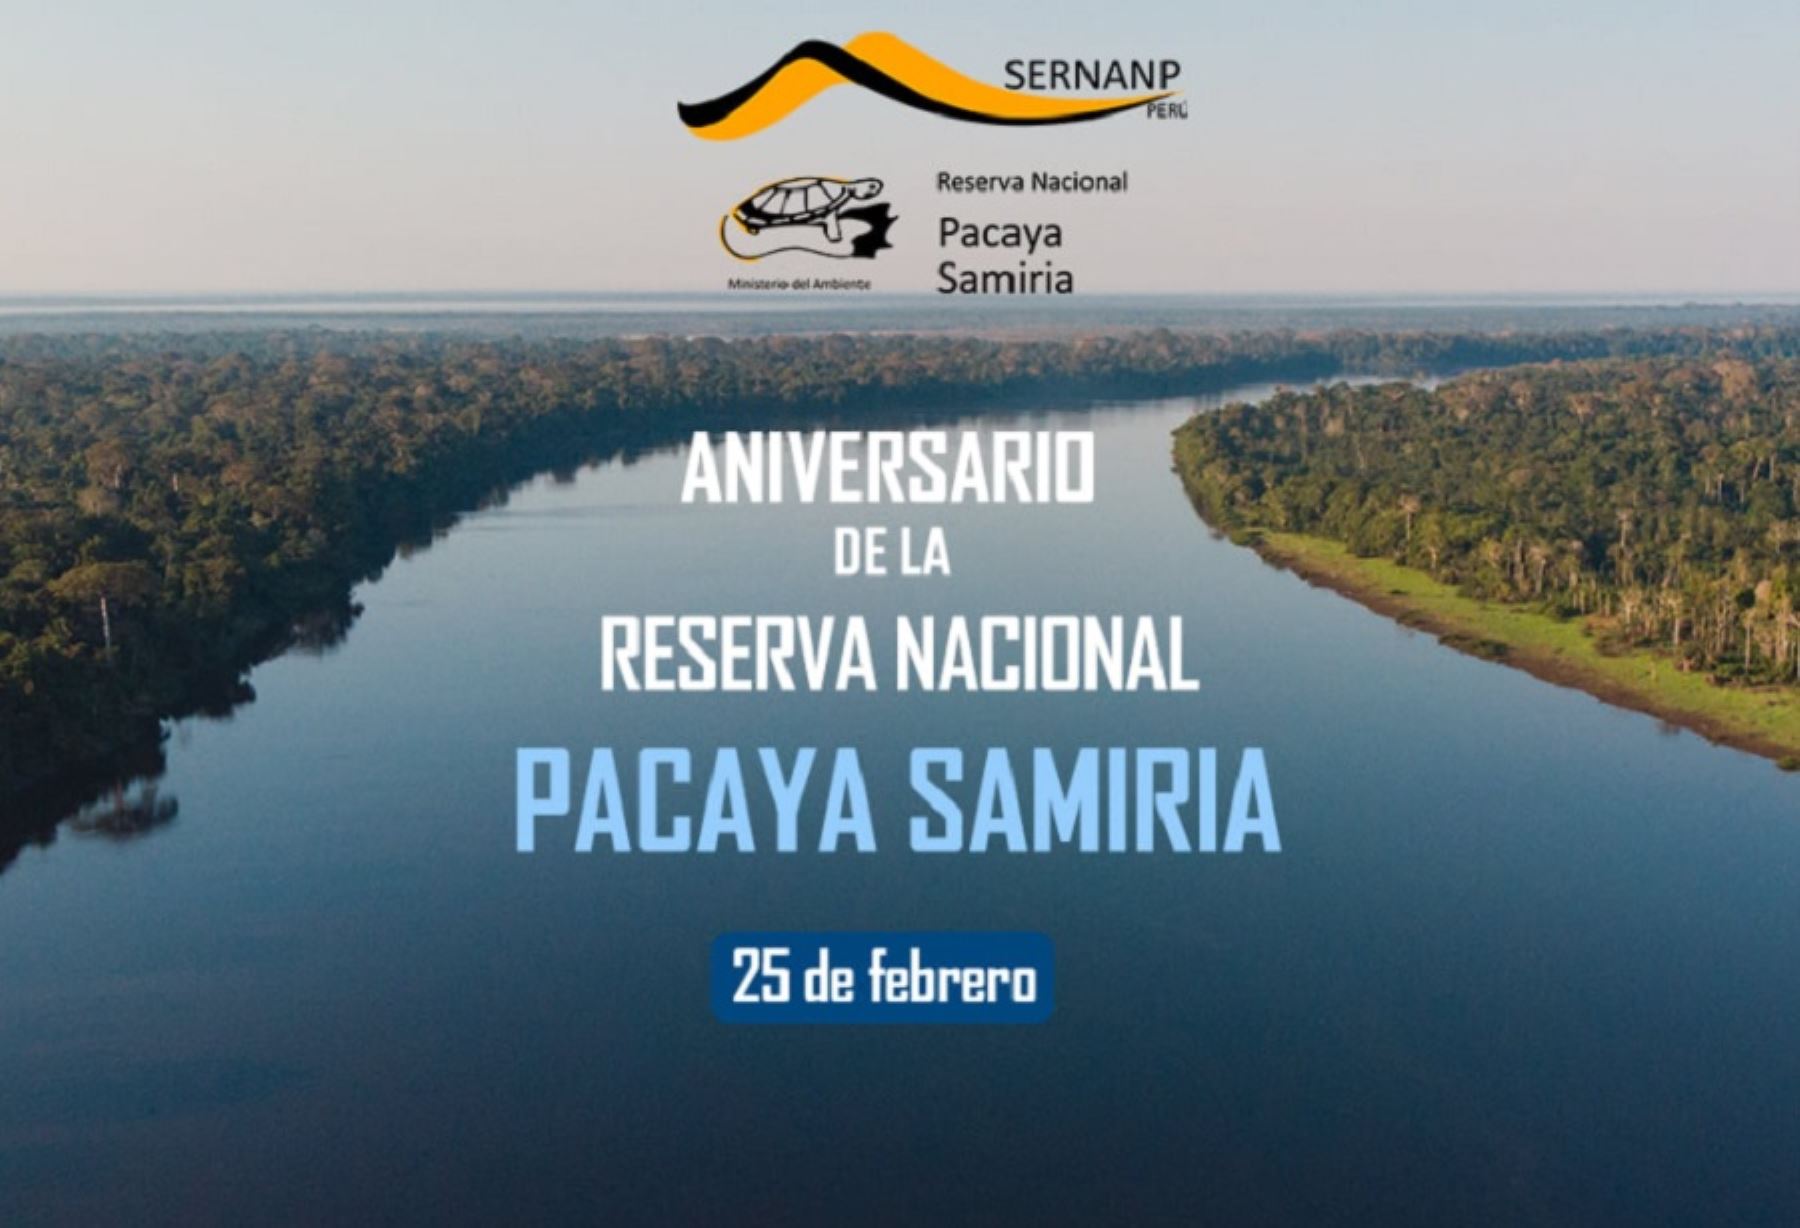 Ubicada en la región Loreto y con una extensión de 2 millones 80 000 hectáreas, Pacaya Samiria es la segunda área natural protegida más grande del Perú.